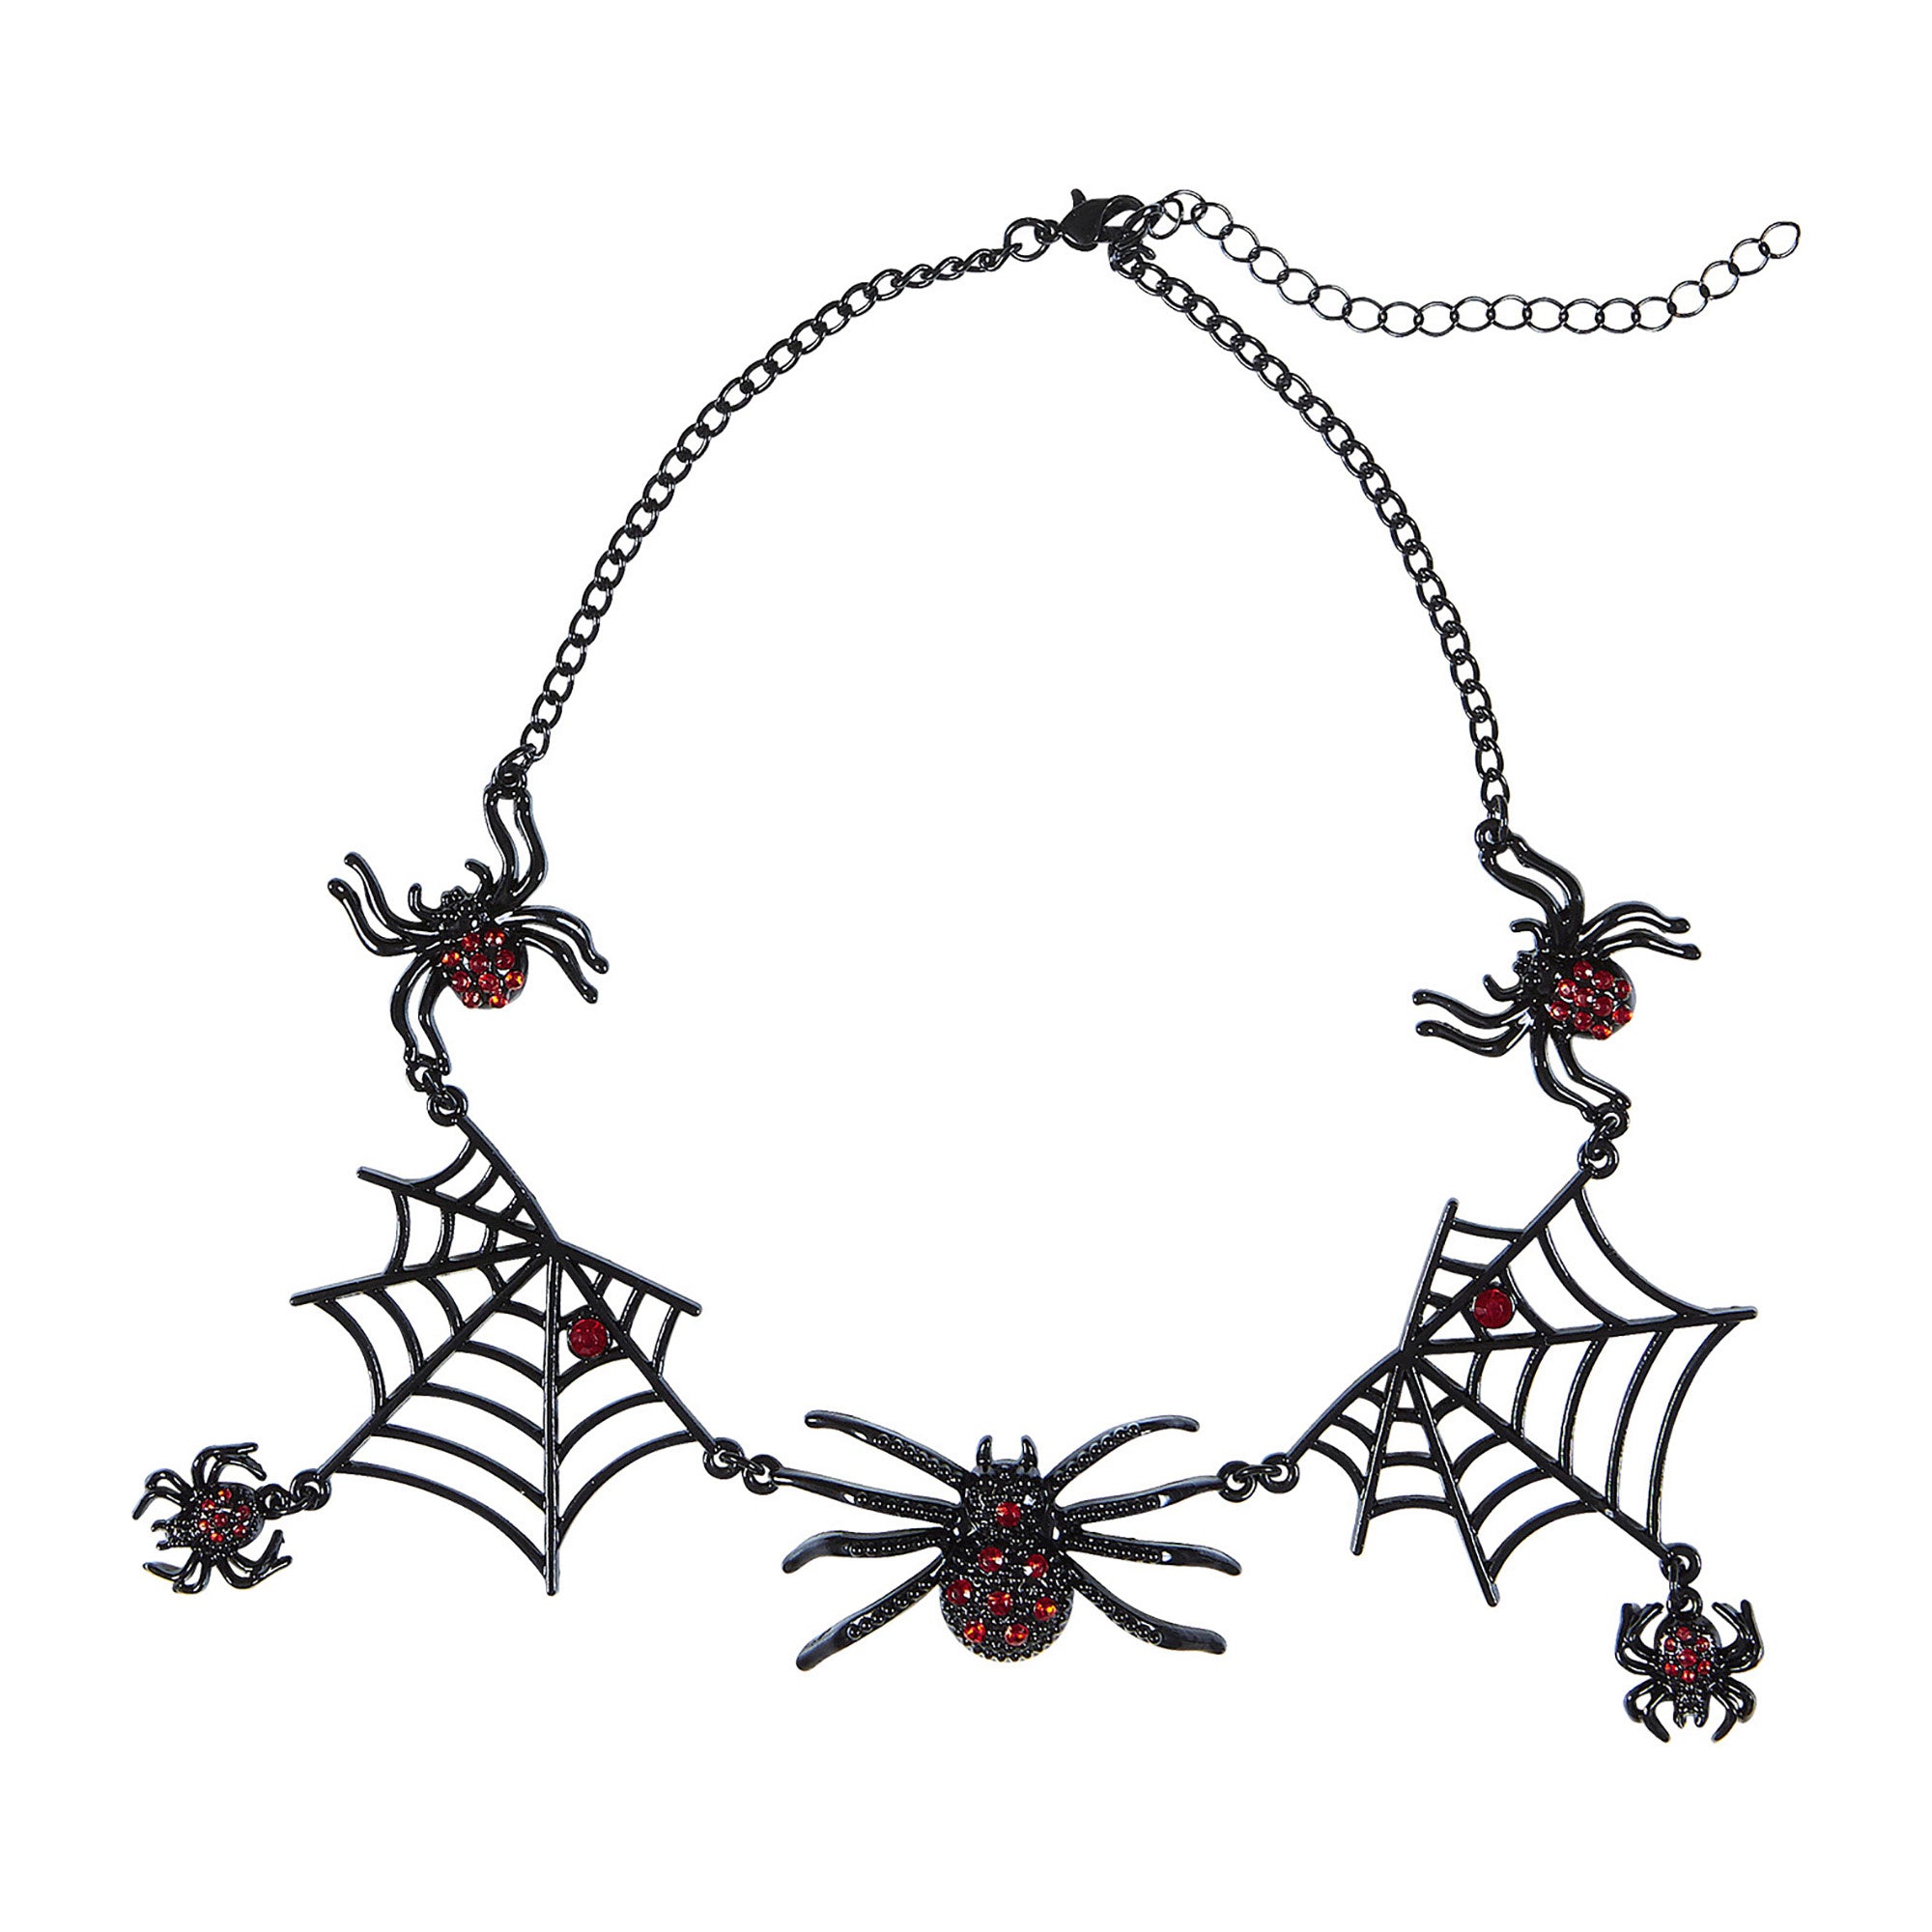 Widmann - Heks & Spider Lady & Voodoo & Duistere Religie Kostuum - Strass Ketting Spin Arachnia - zwart - Carnavalskleding - Verkleedkleding